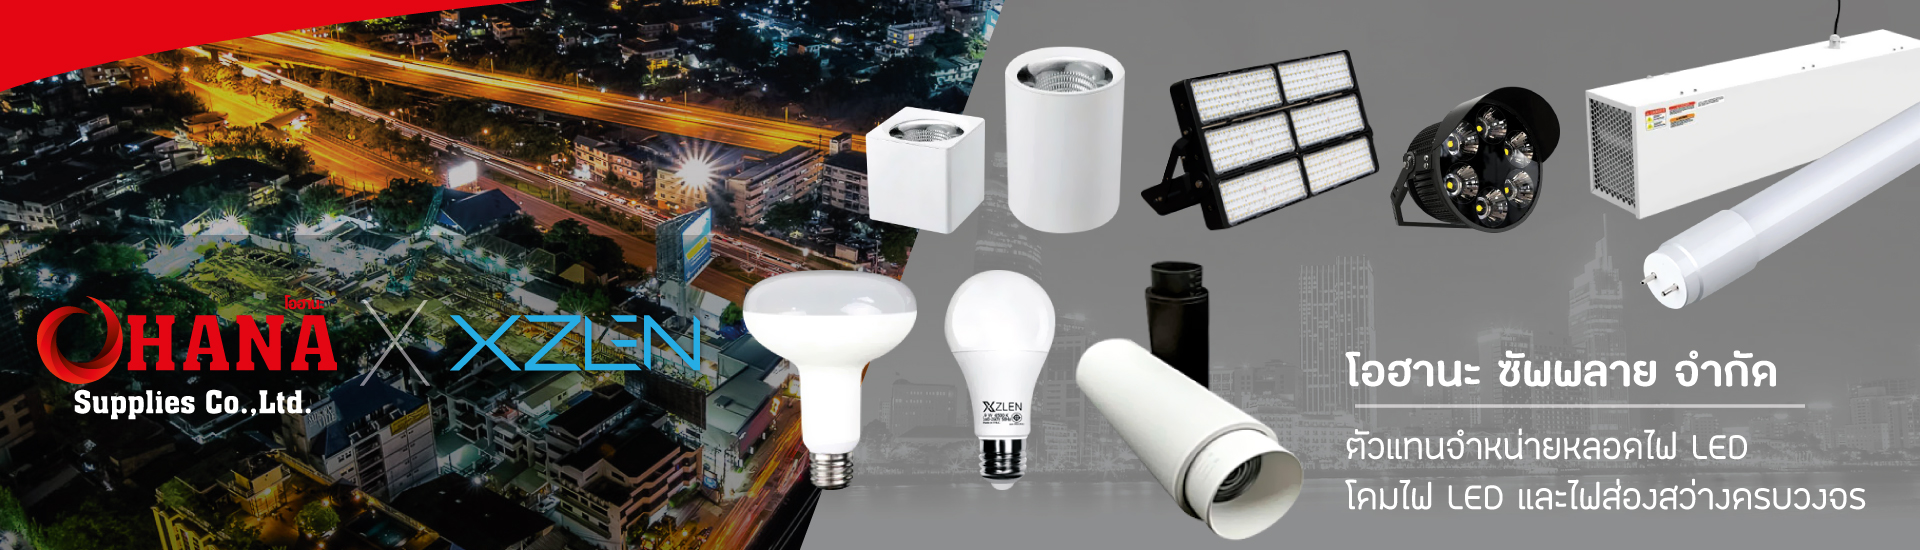 เราเป็นตัวแทนจำหน่ายสินค้า หลอดไฟ LED โคมไฟ LED และส่องสว่างครบวงจร